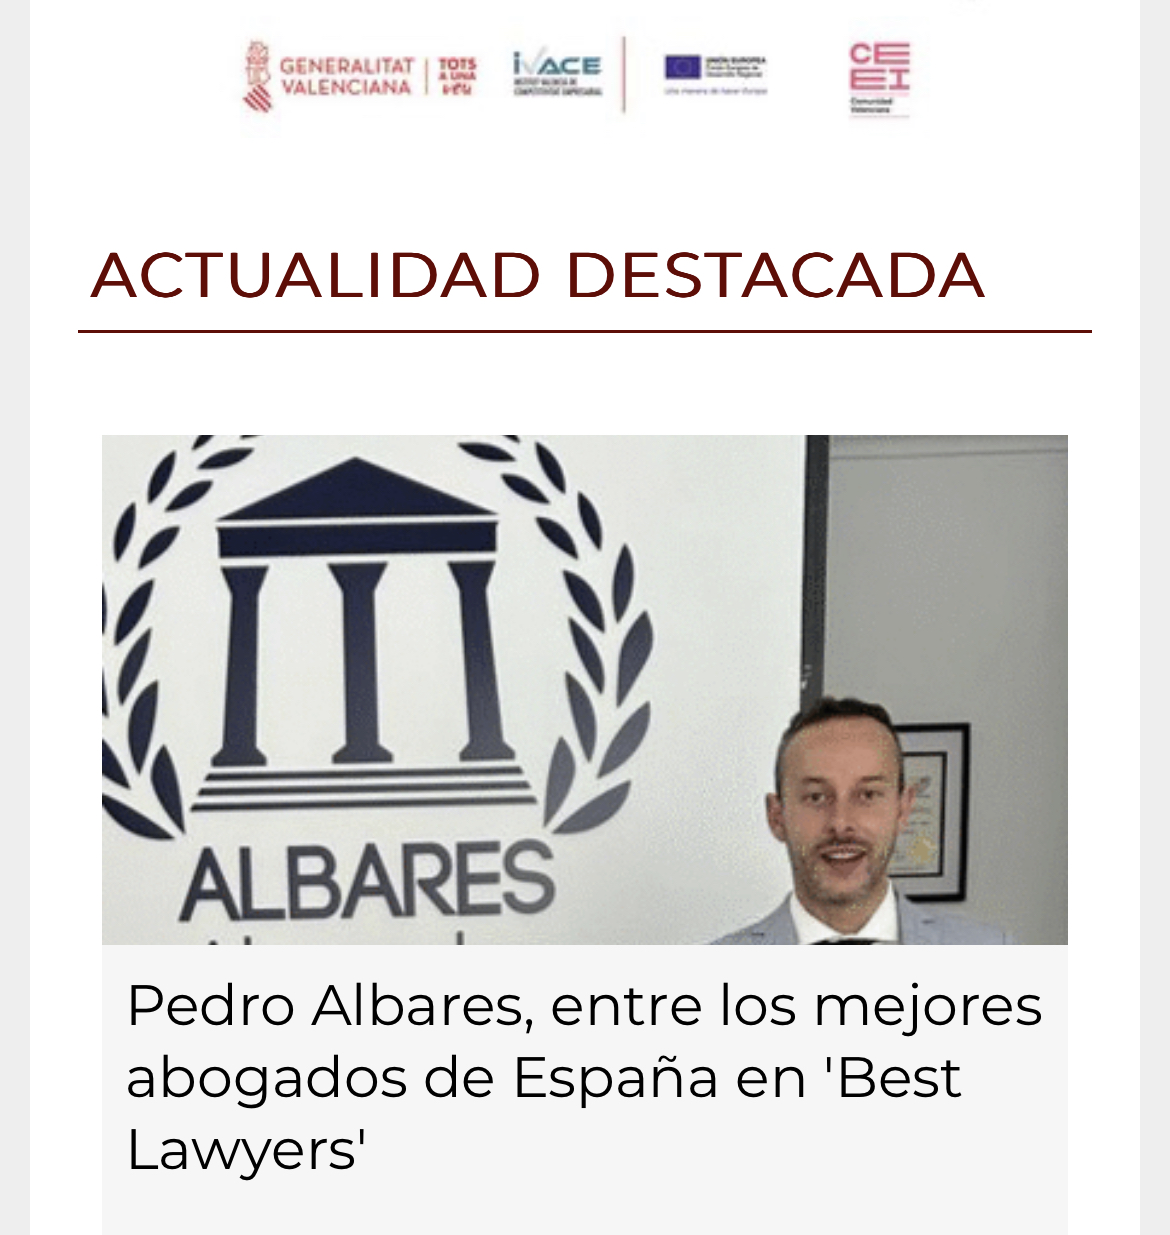 mar ron hace | EES
wy “uaa

In

 

Pedro Albares, entre los mejores
abogados de Espana en 'Best
Lawyers’